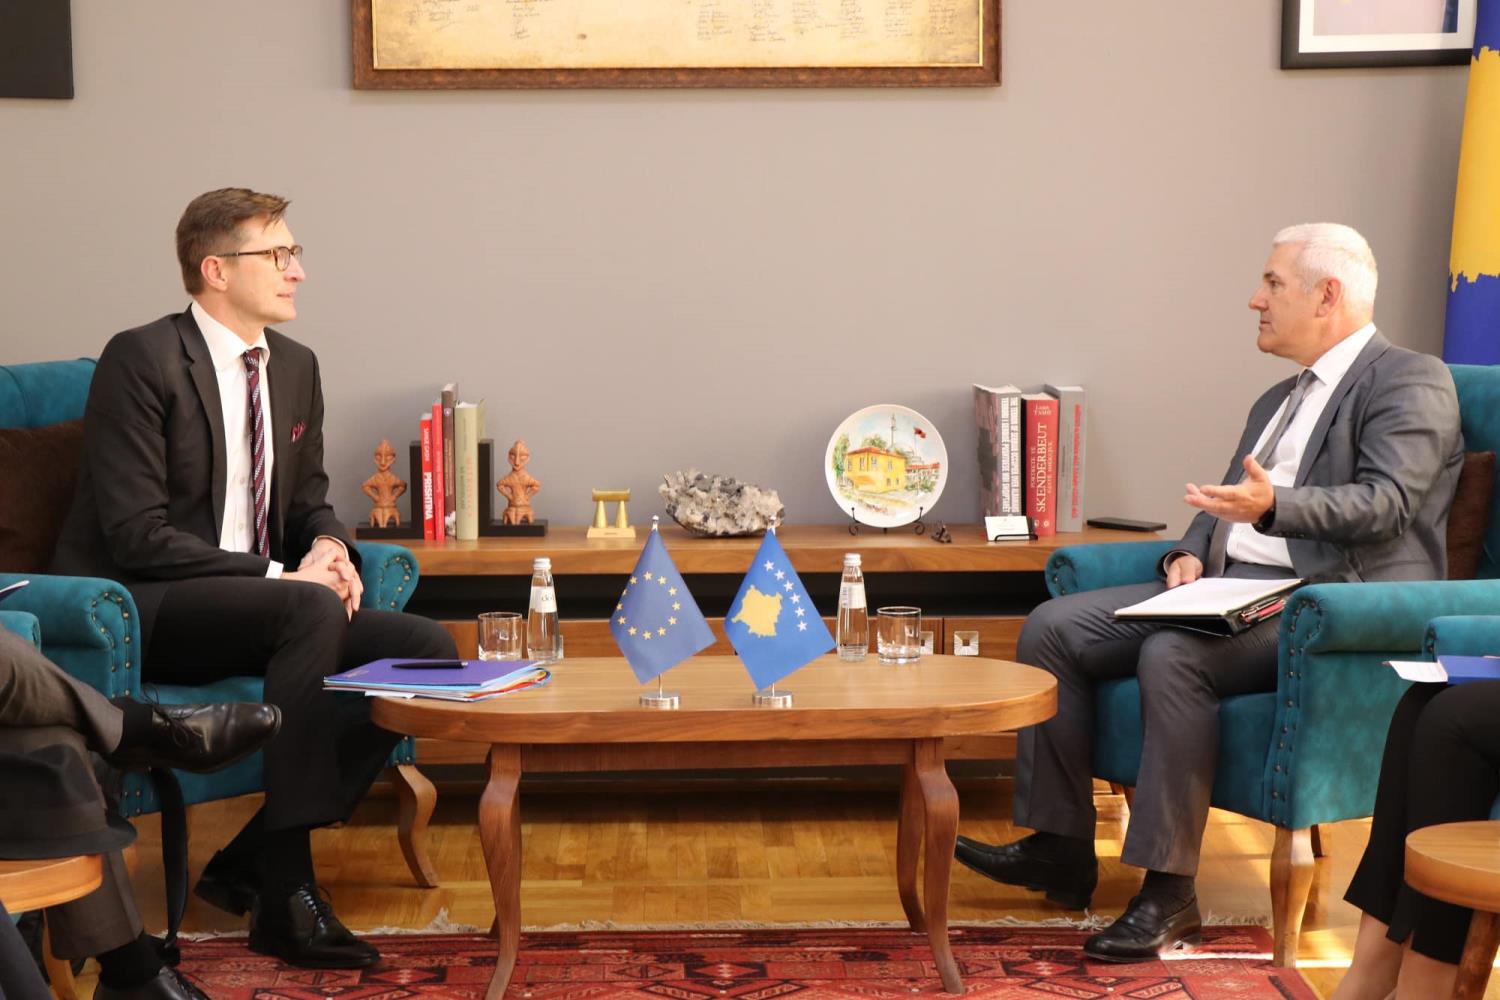 Ministar unutrašnjih poslova Xhelal Sveçla primio je na sastanku zamenika generalnog direktora za Evropu Evropske službe za spoljne poslove (EEAS) EU Marka Makovca, ambasadora EU na Kosovu Tomasa Šunjoga